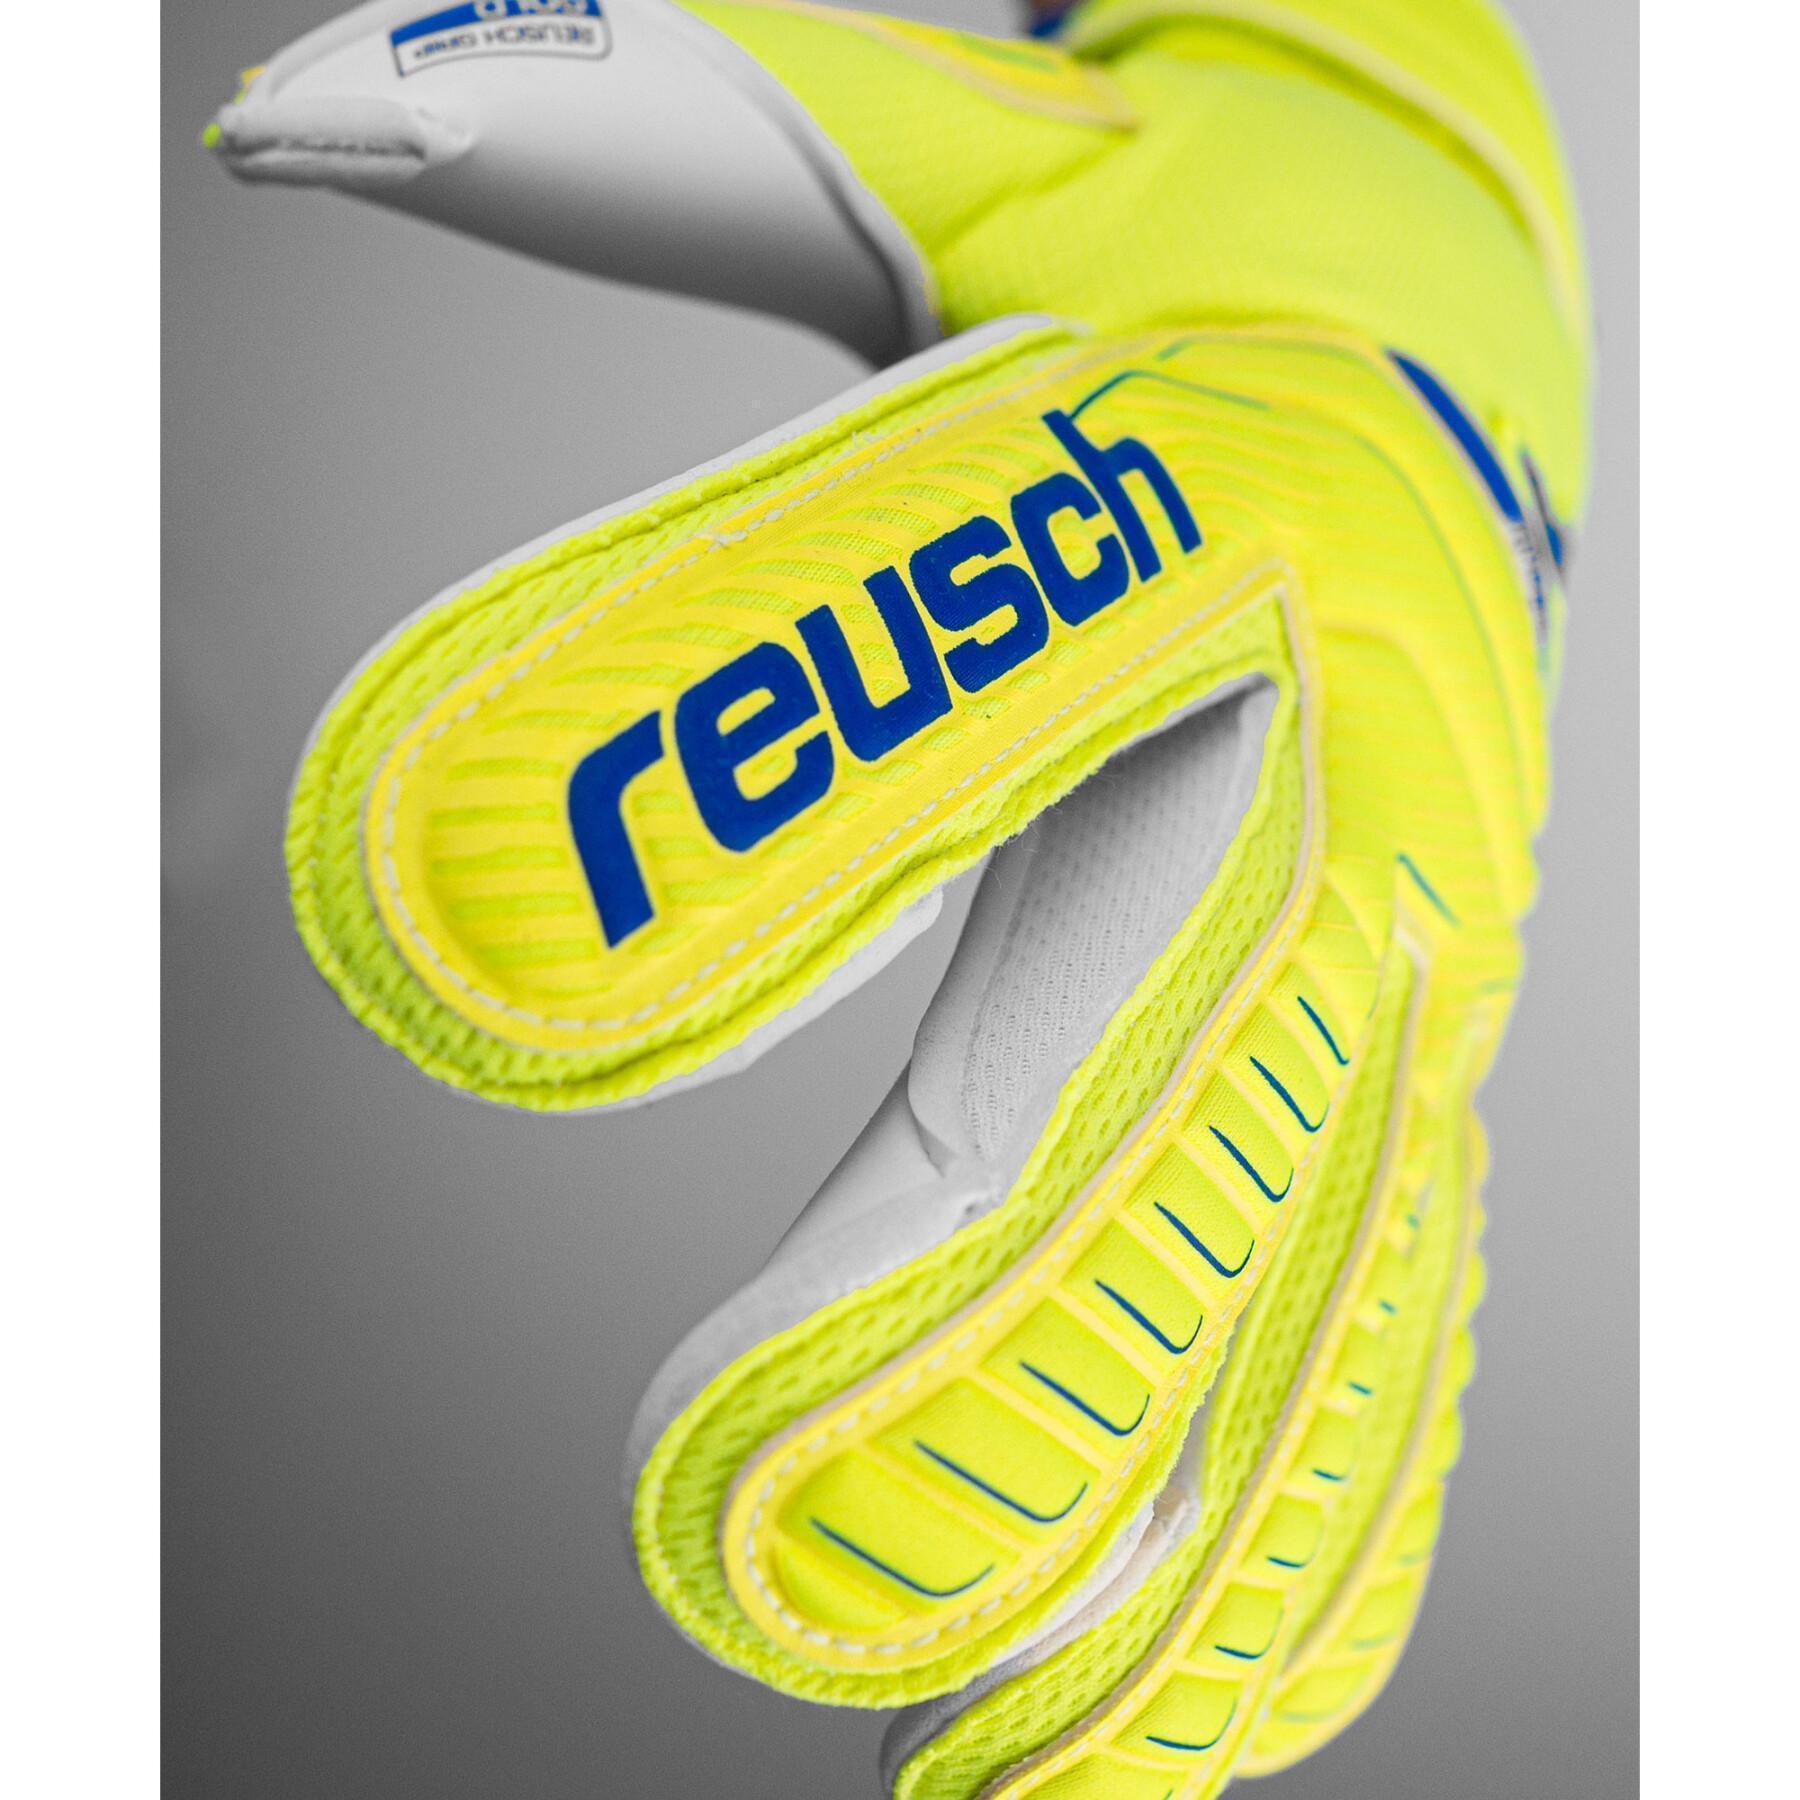 Goalkeeper gloves Reusch Attrakt Gold Evolution Cut